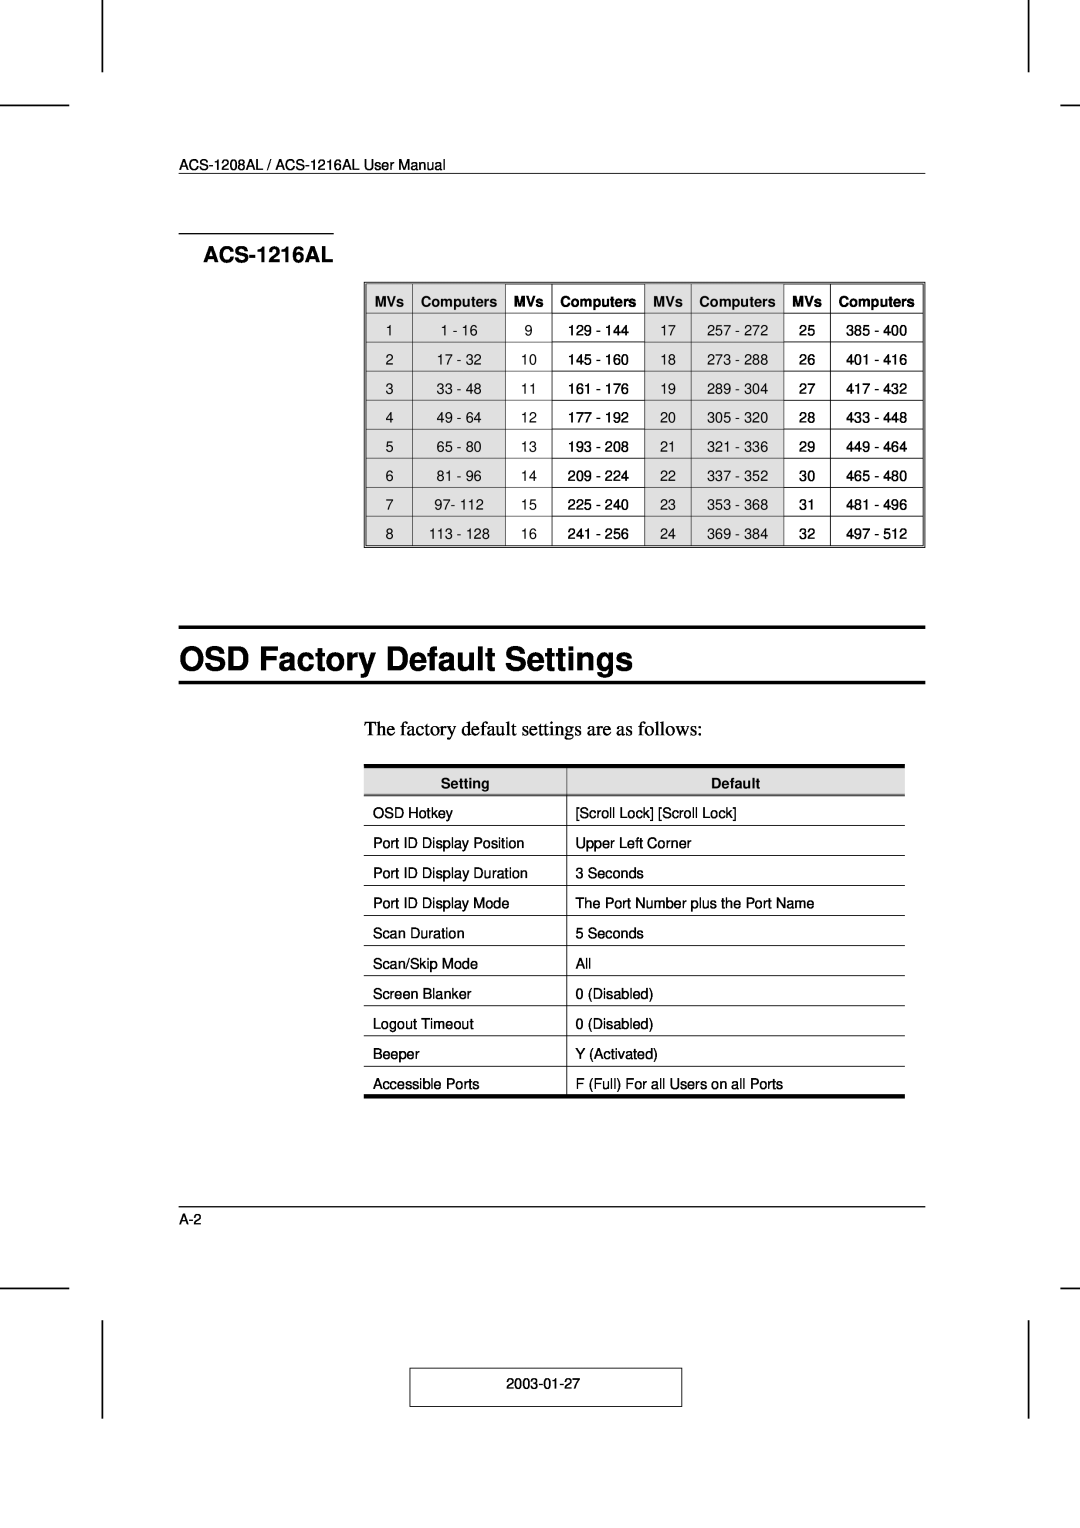 ATEN Technology ACS-1208AL, ACS-1216AL user manual OSD Factory Default Settings, Computers 